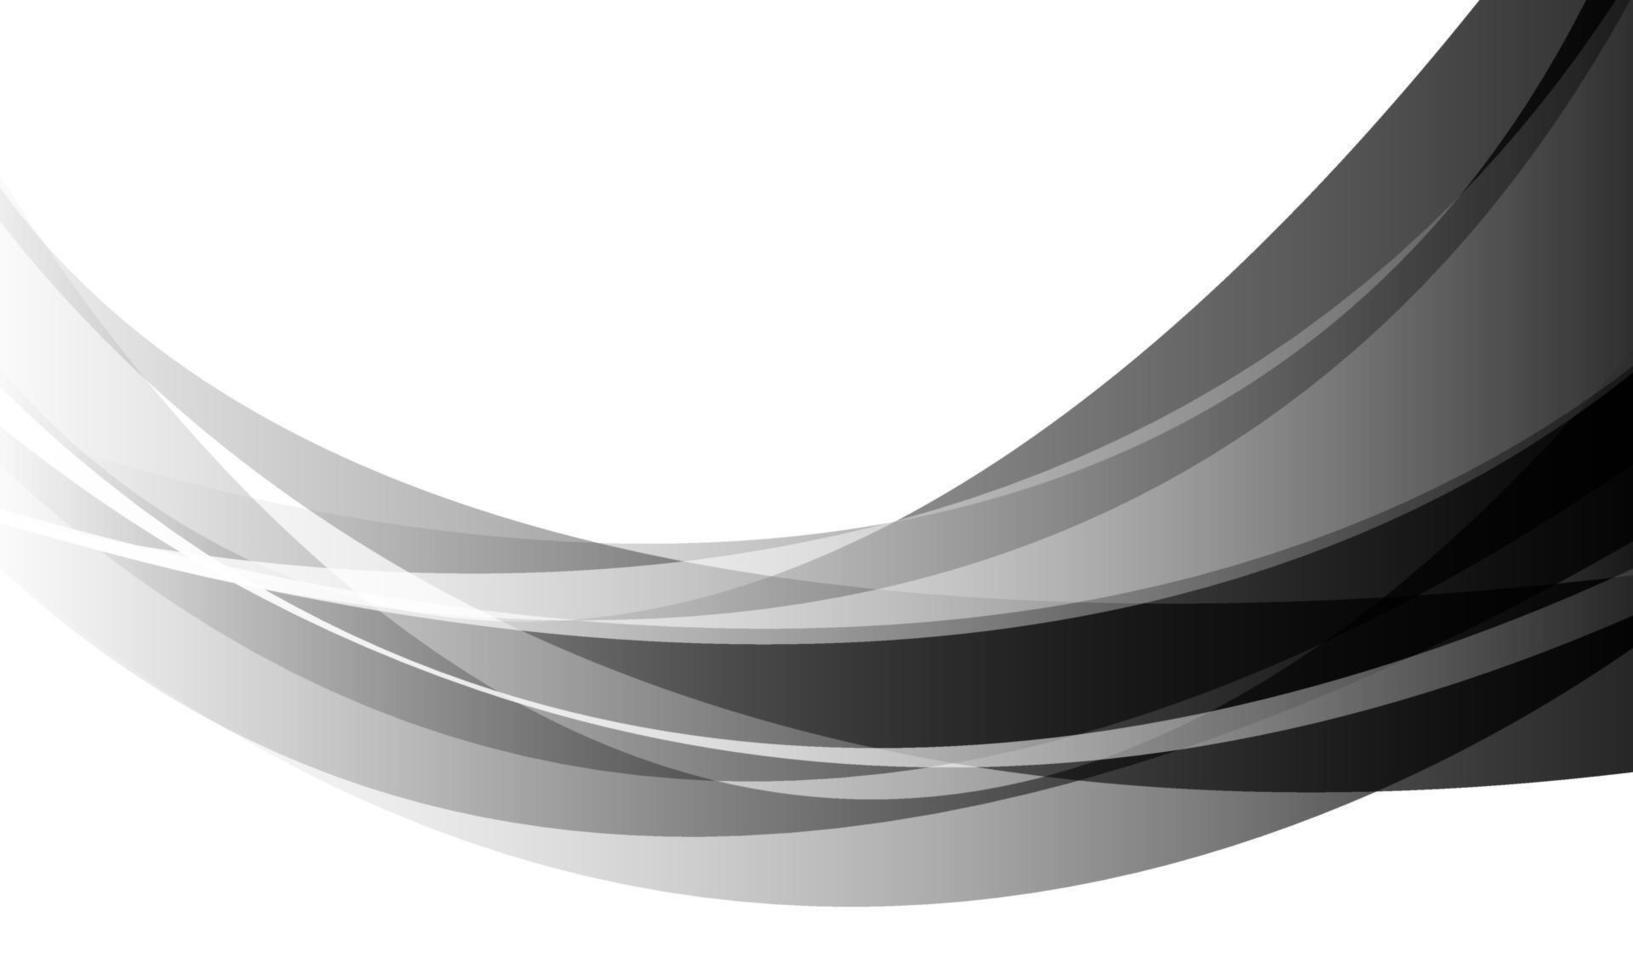 abstracte zwarte grijze kromme overlap op wit ontwerp moderne futuristische creatieve achtergrond vector